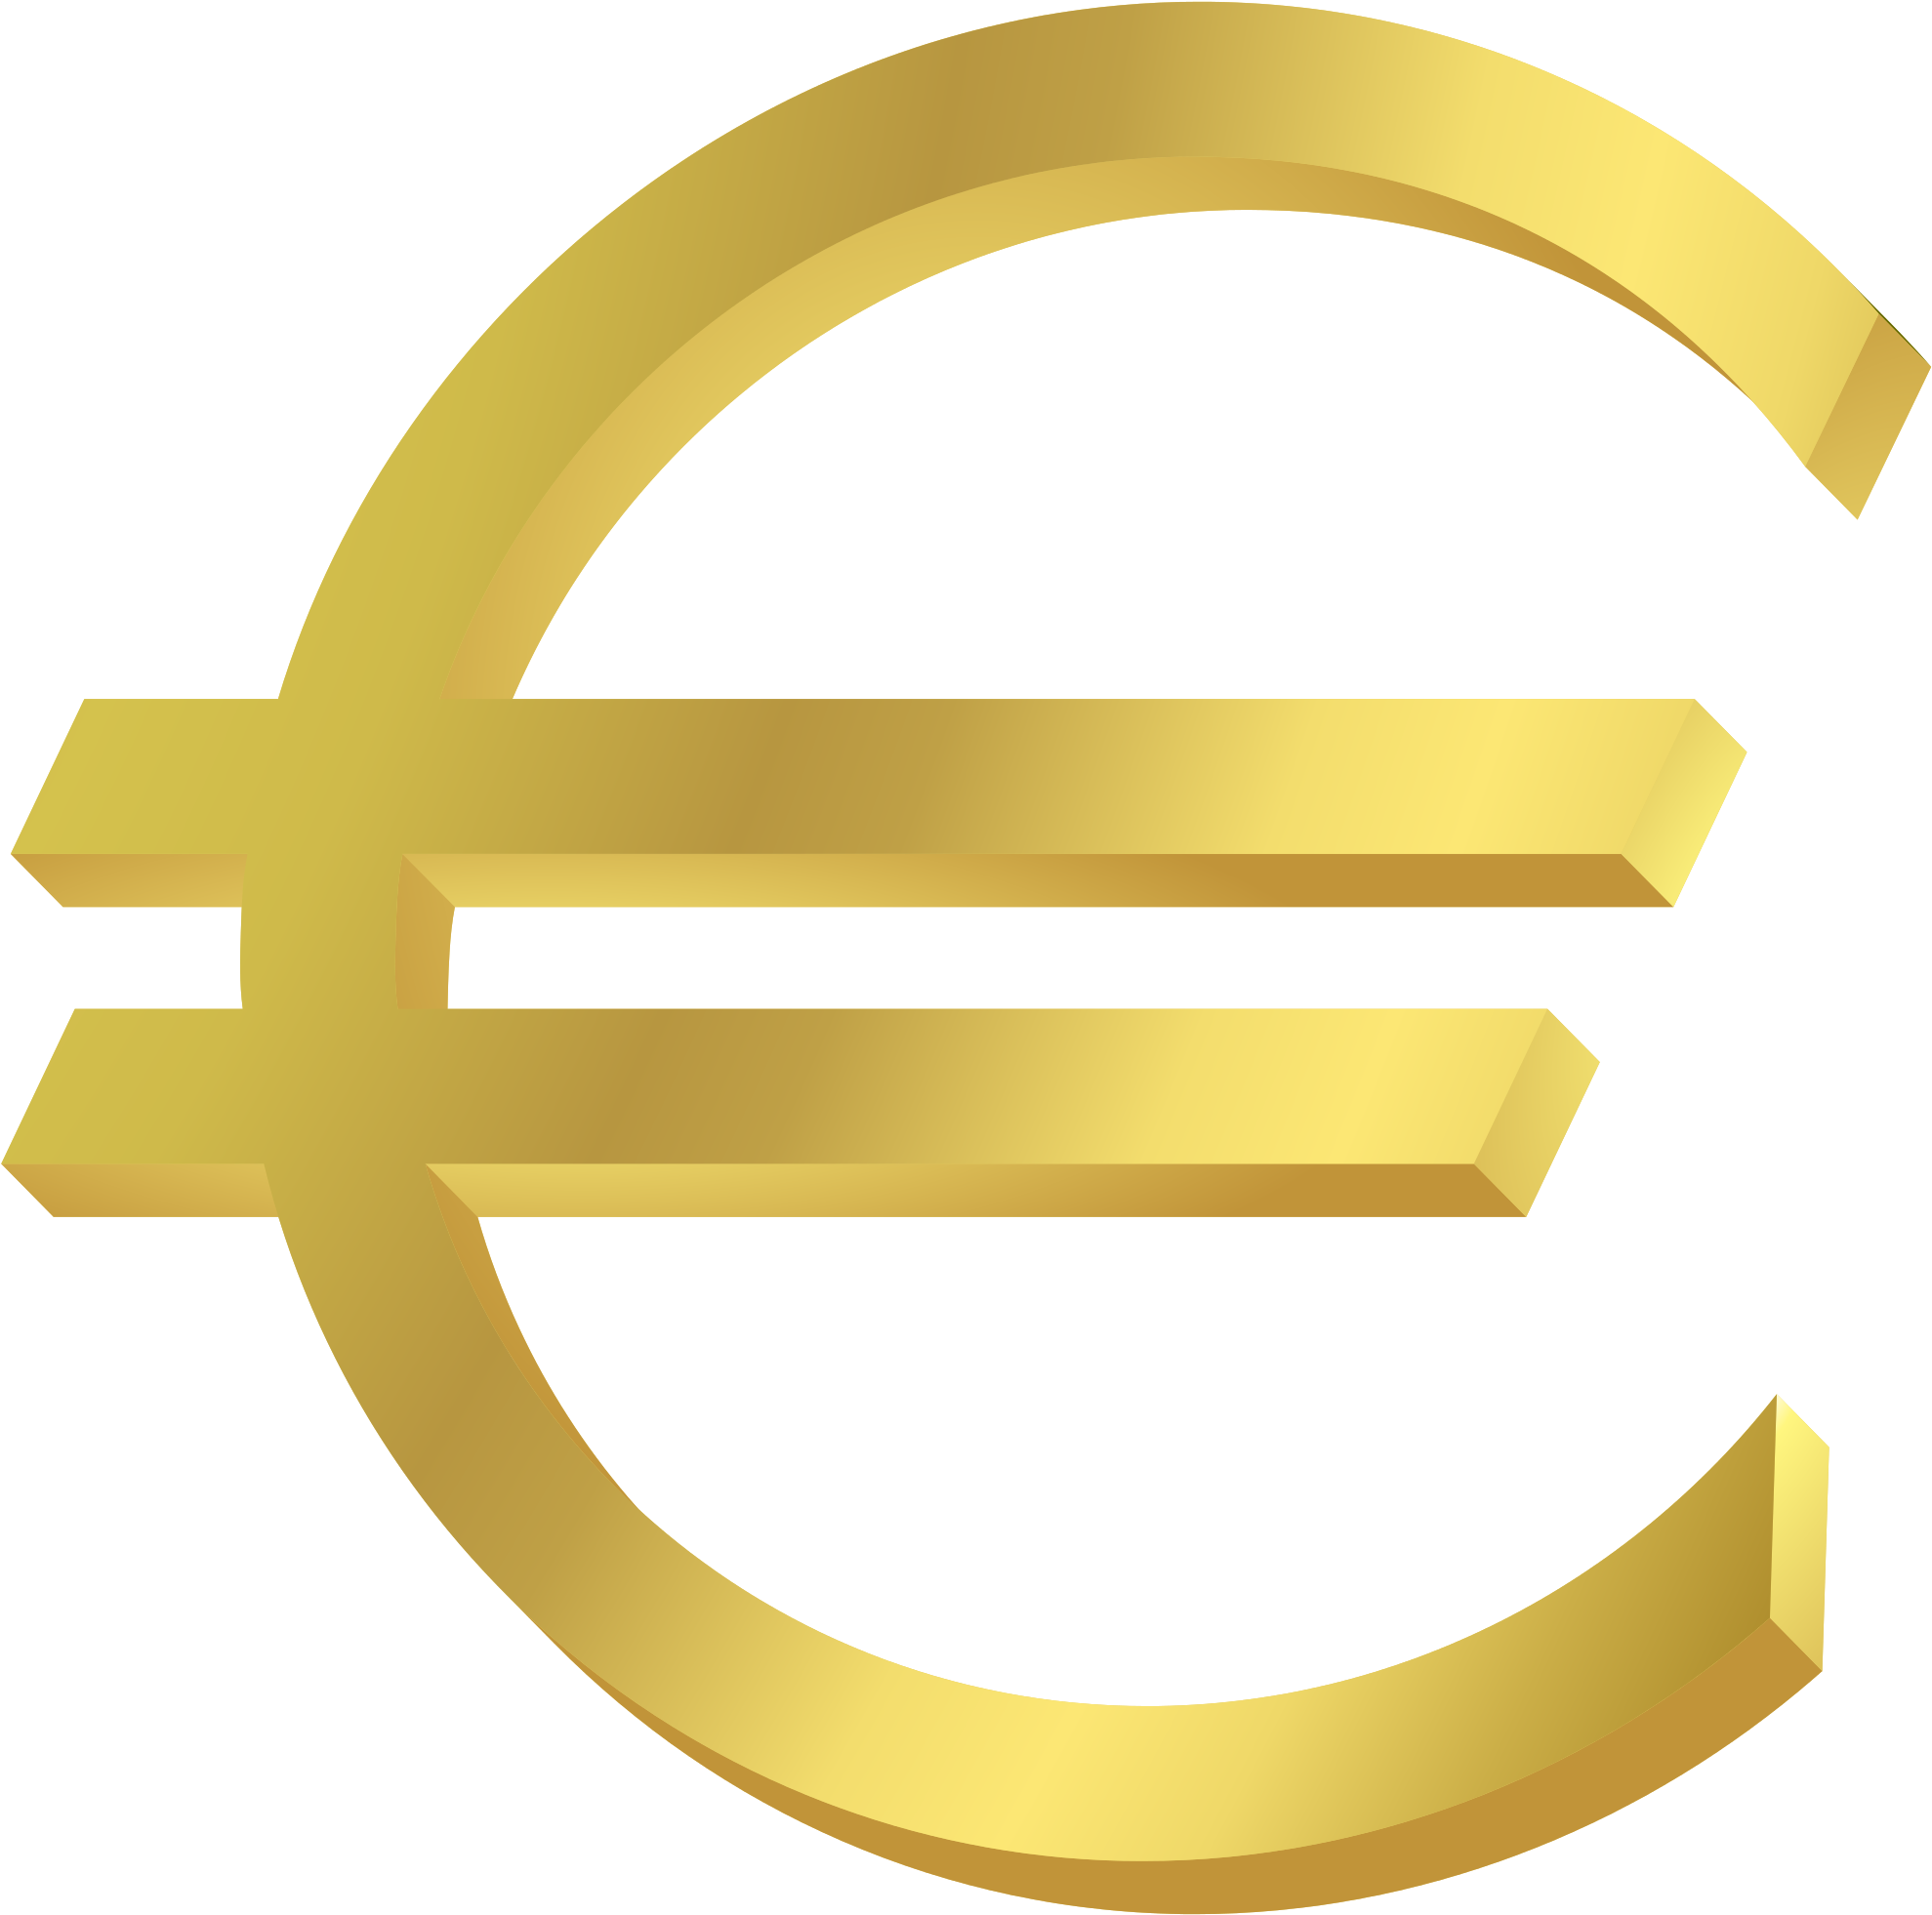 If - Euro Symbol Png (2000x1986)